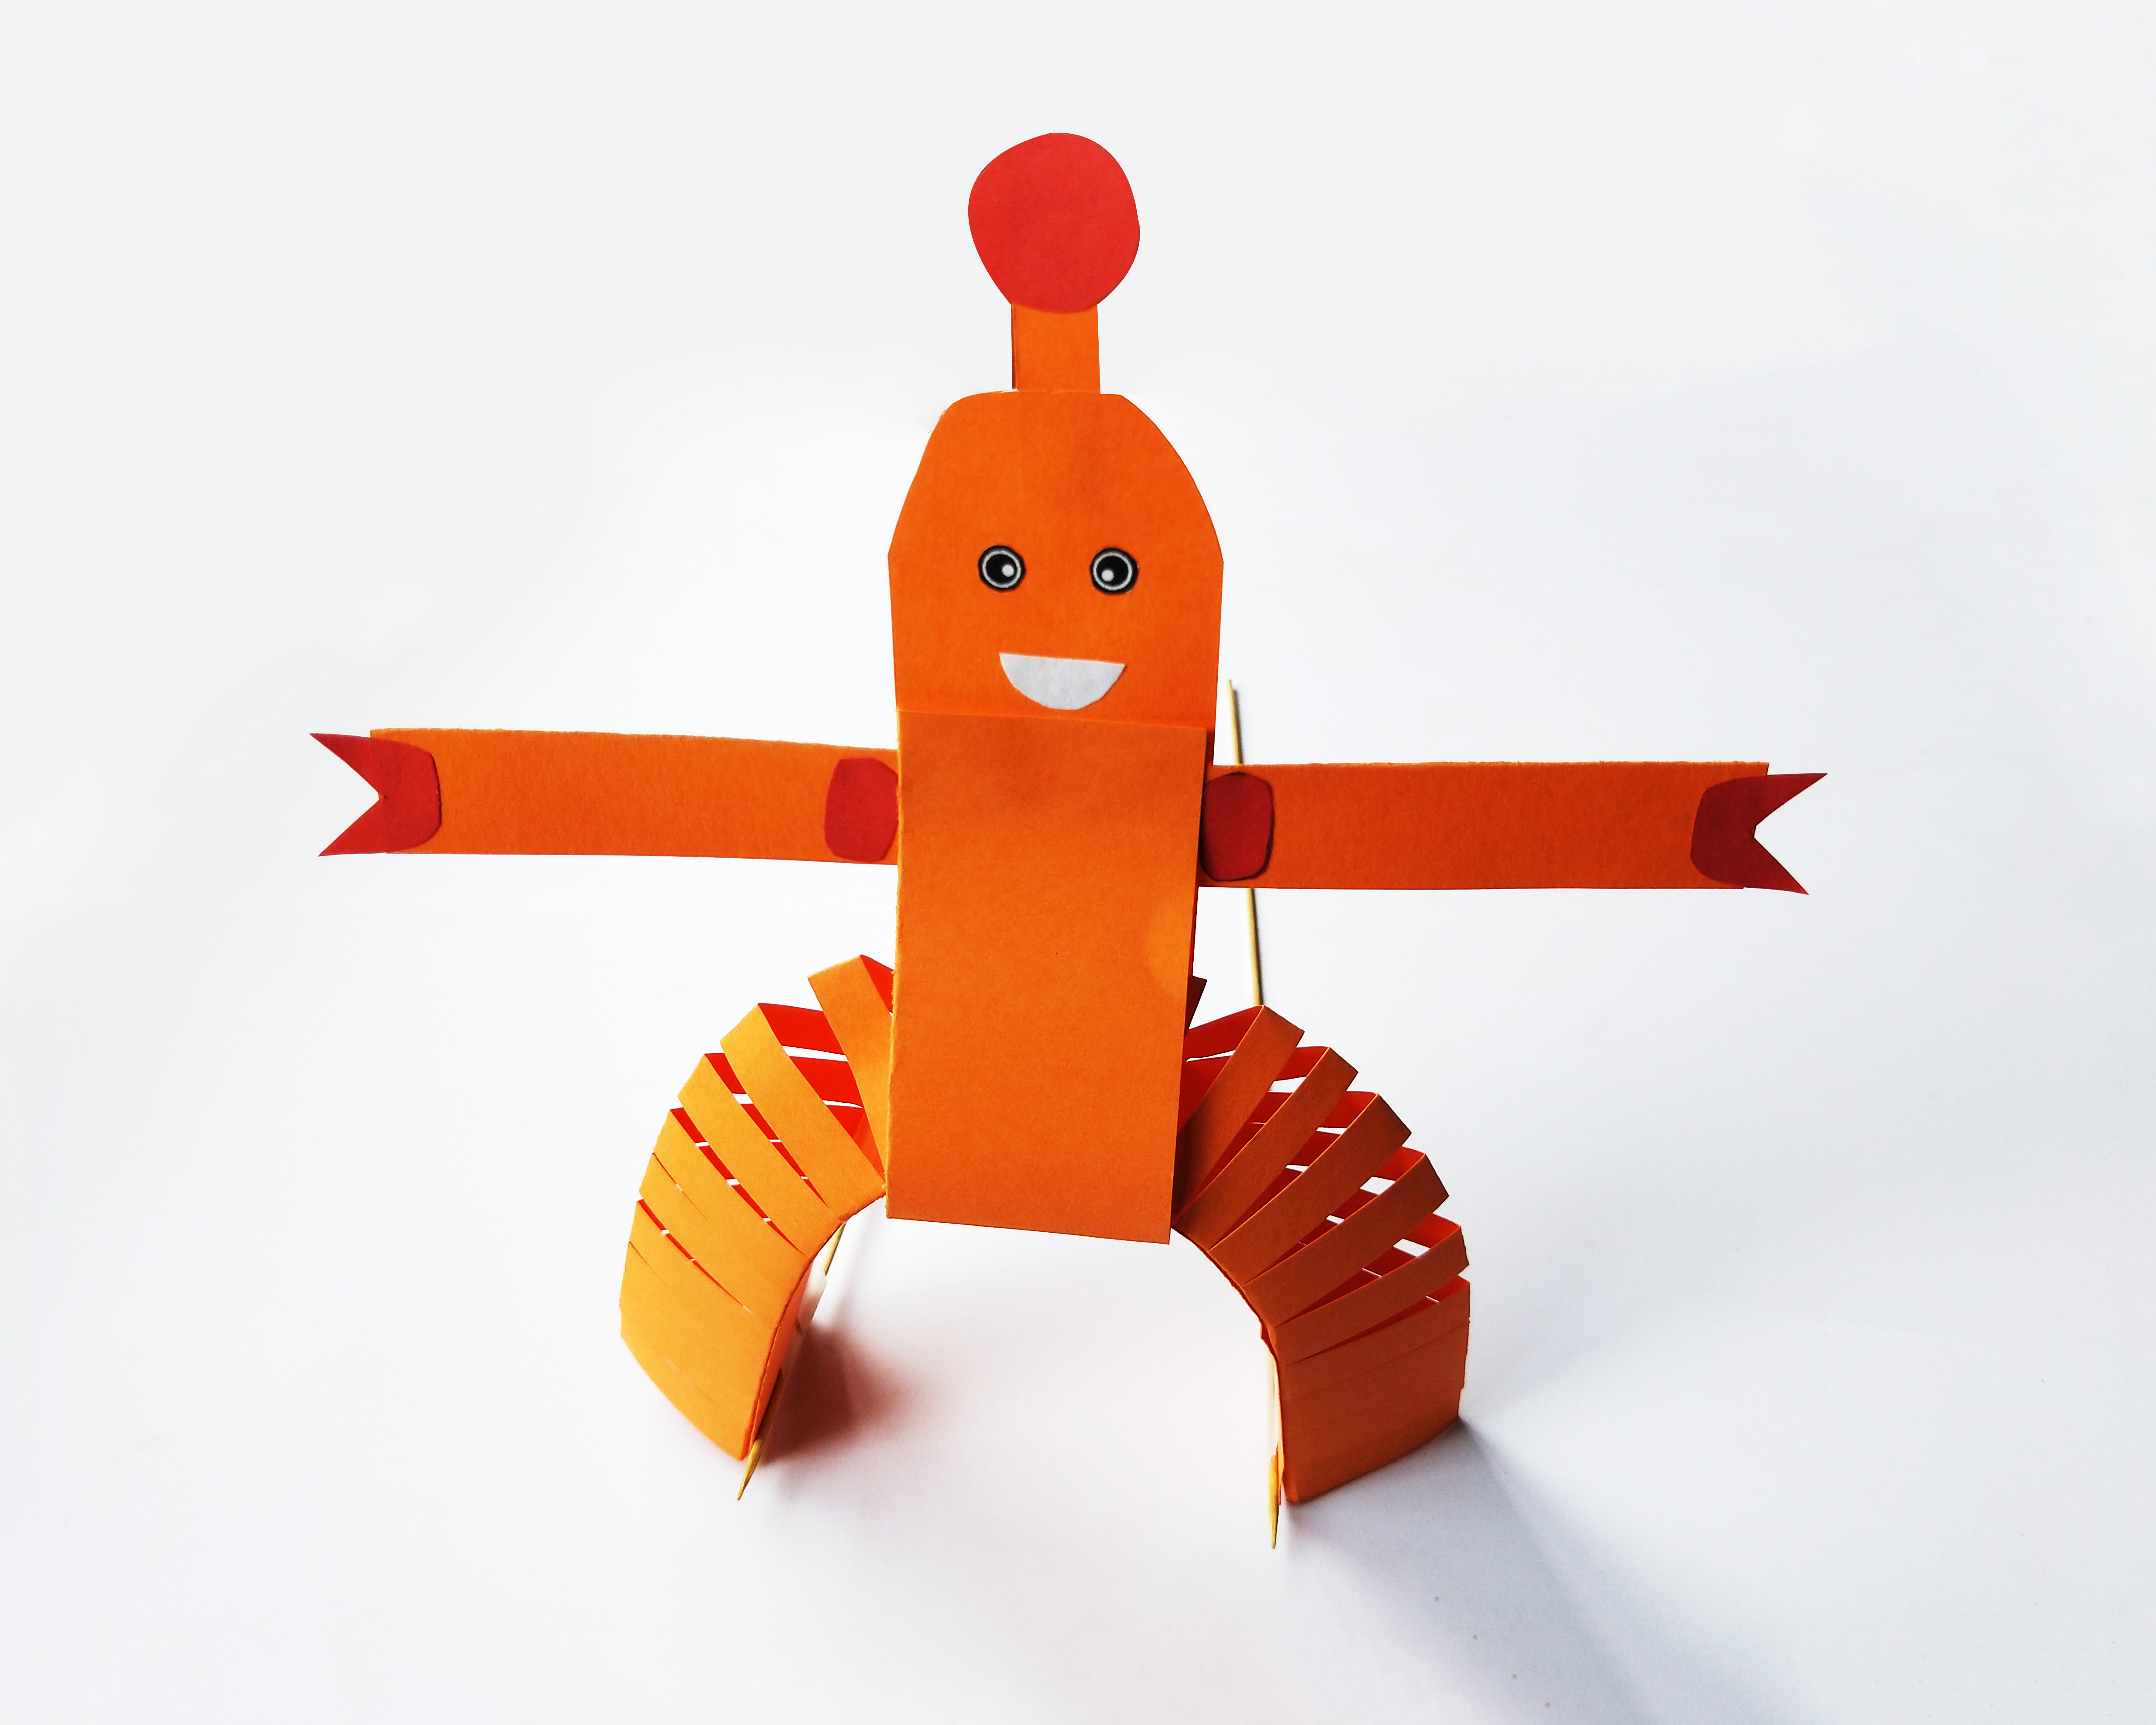 手工制作:皮影机器人,用折纸来做一个自己喜欢的机器人